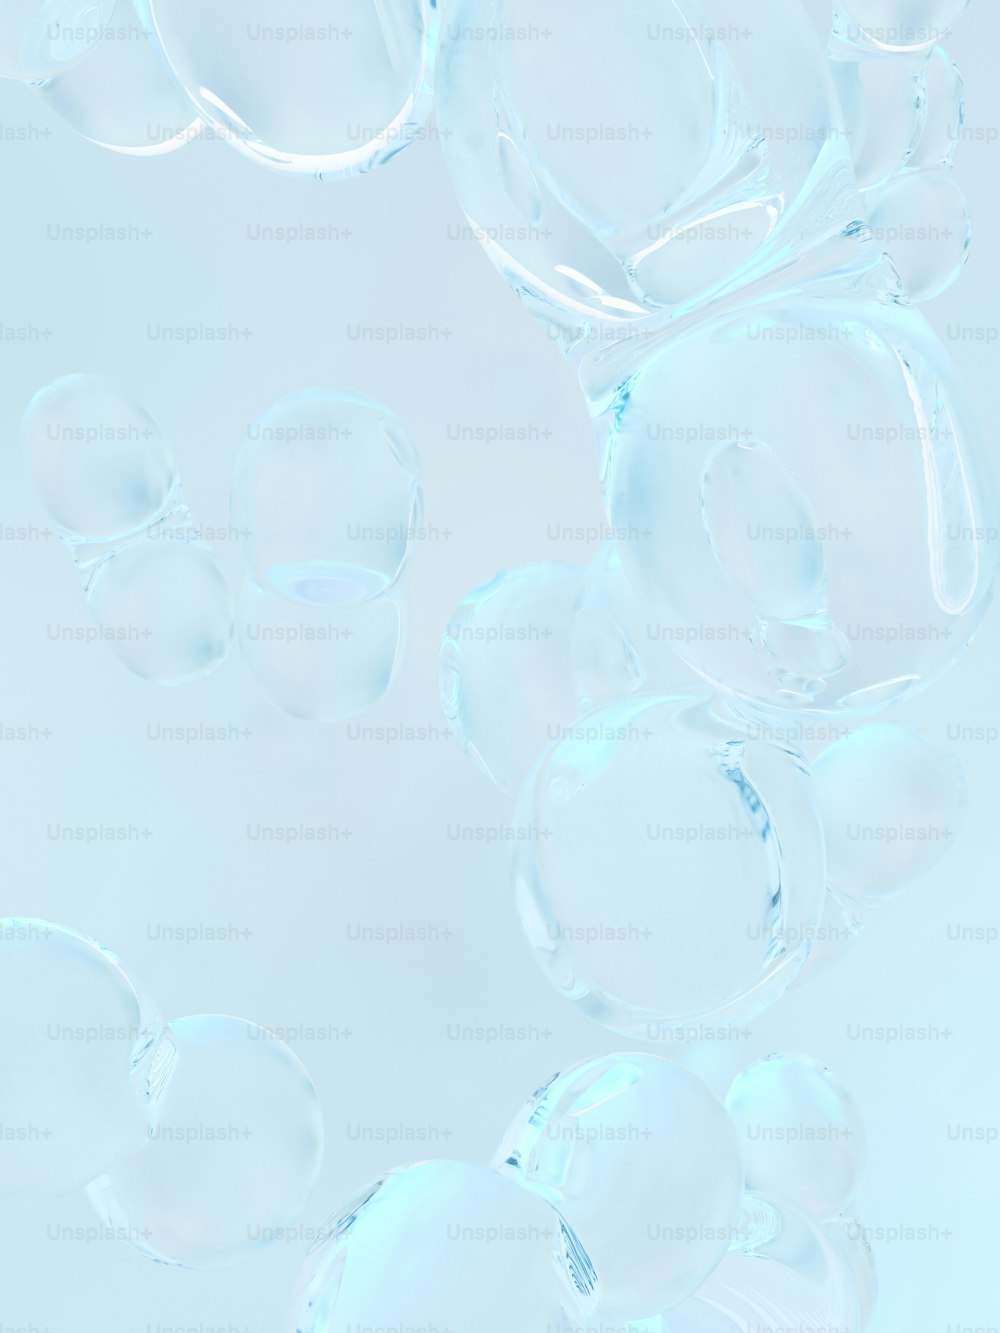 Un grupo de burbujas flotando en el aire